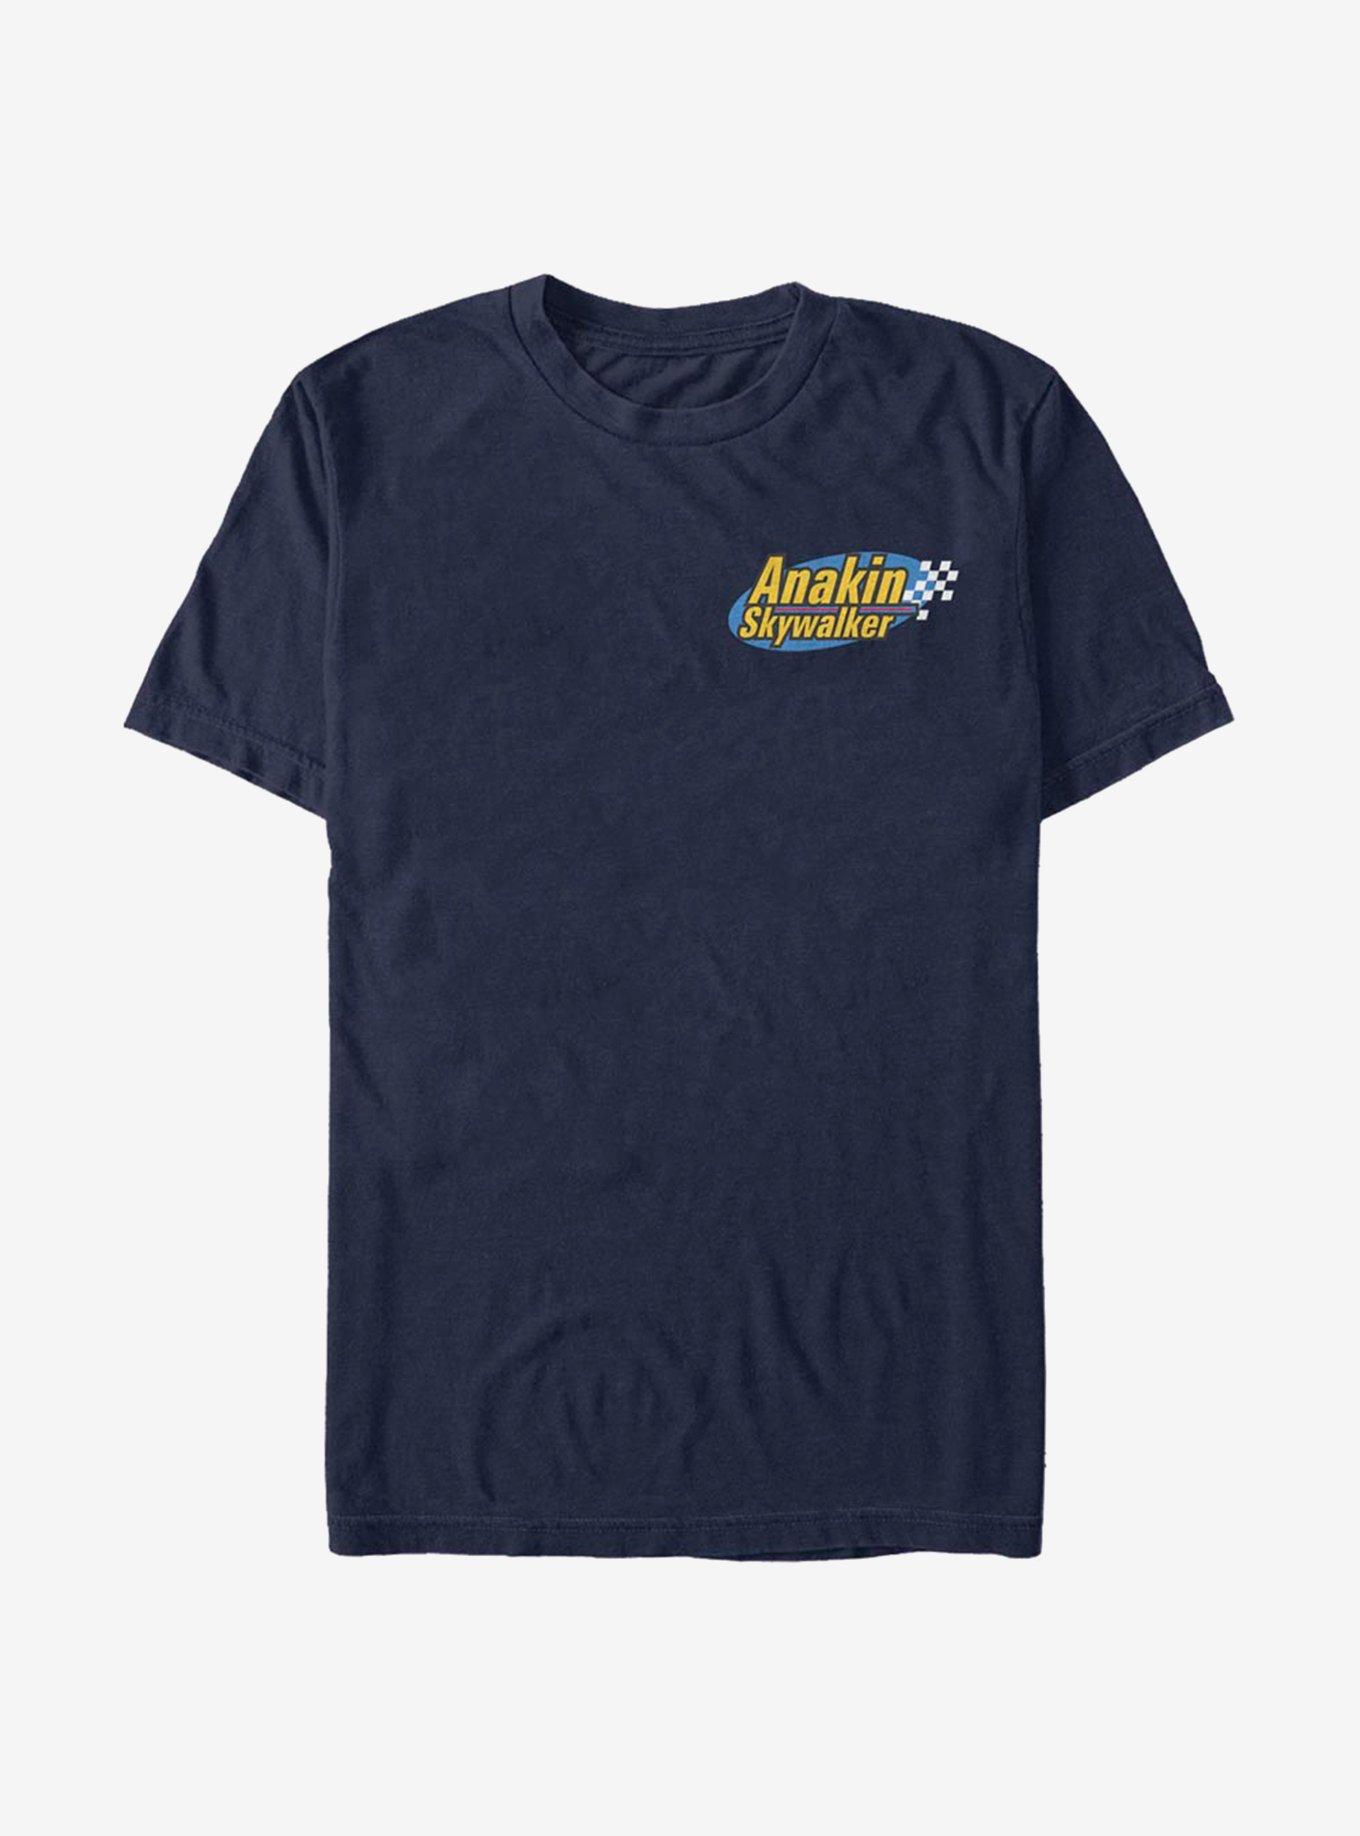 Star Wars Anakin Badge T-Shirt, NAVY, hi-res